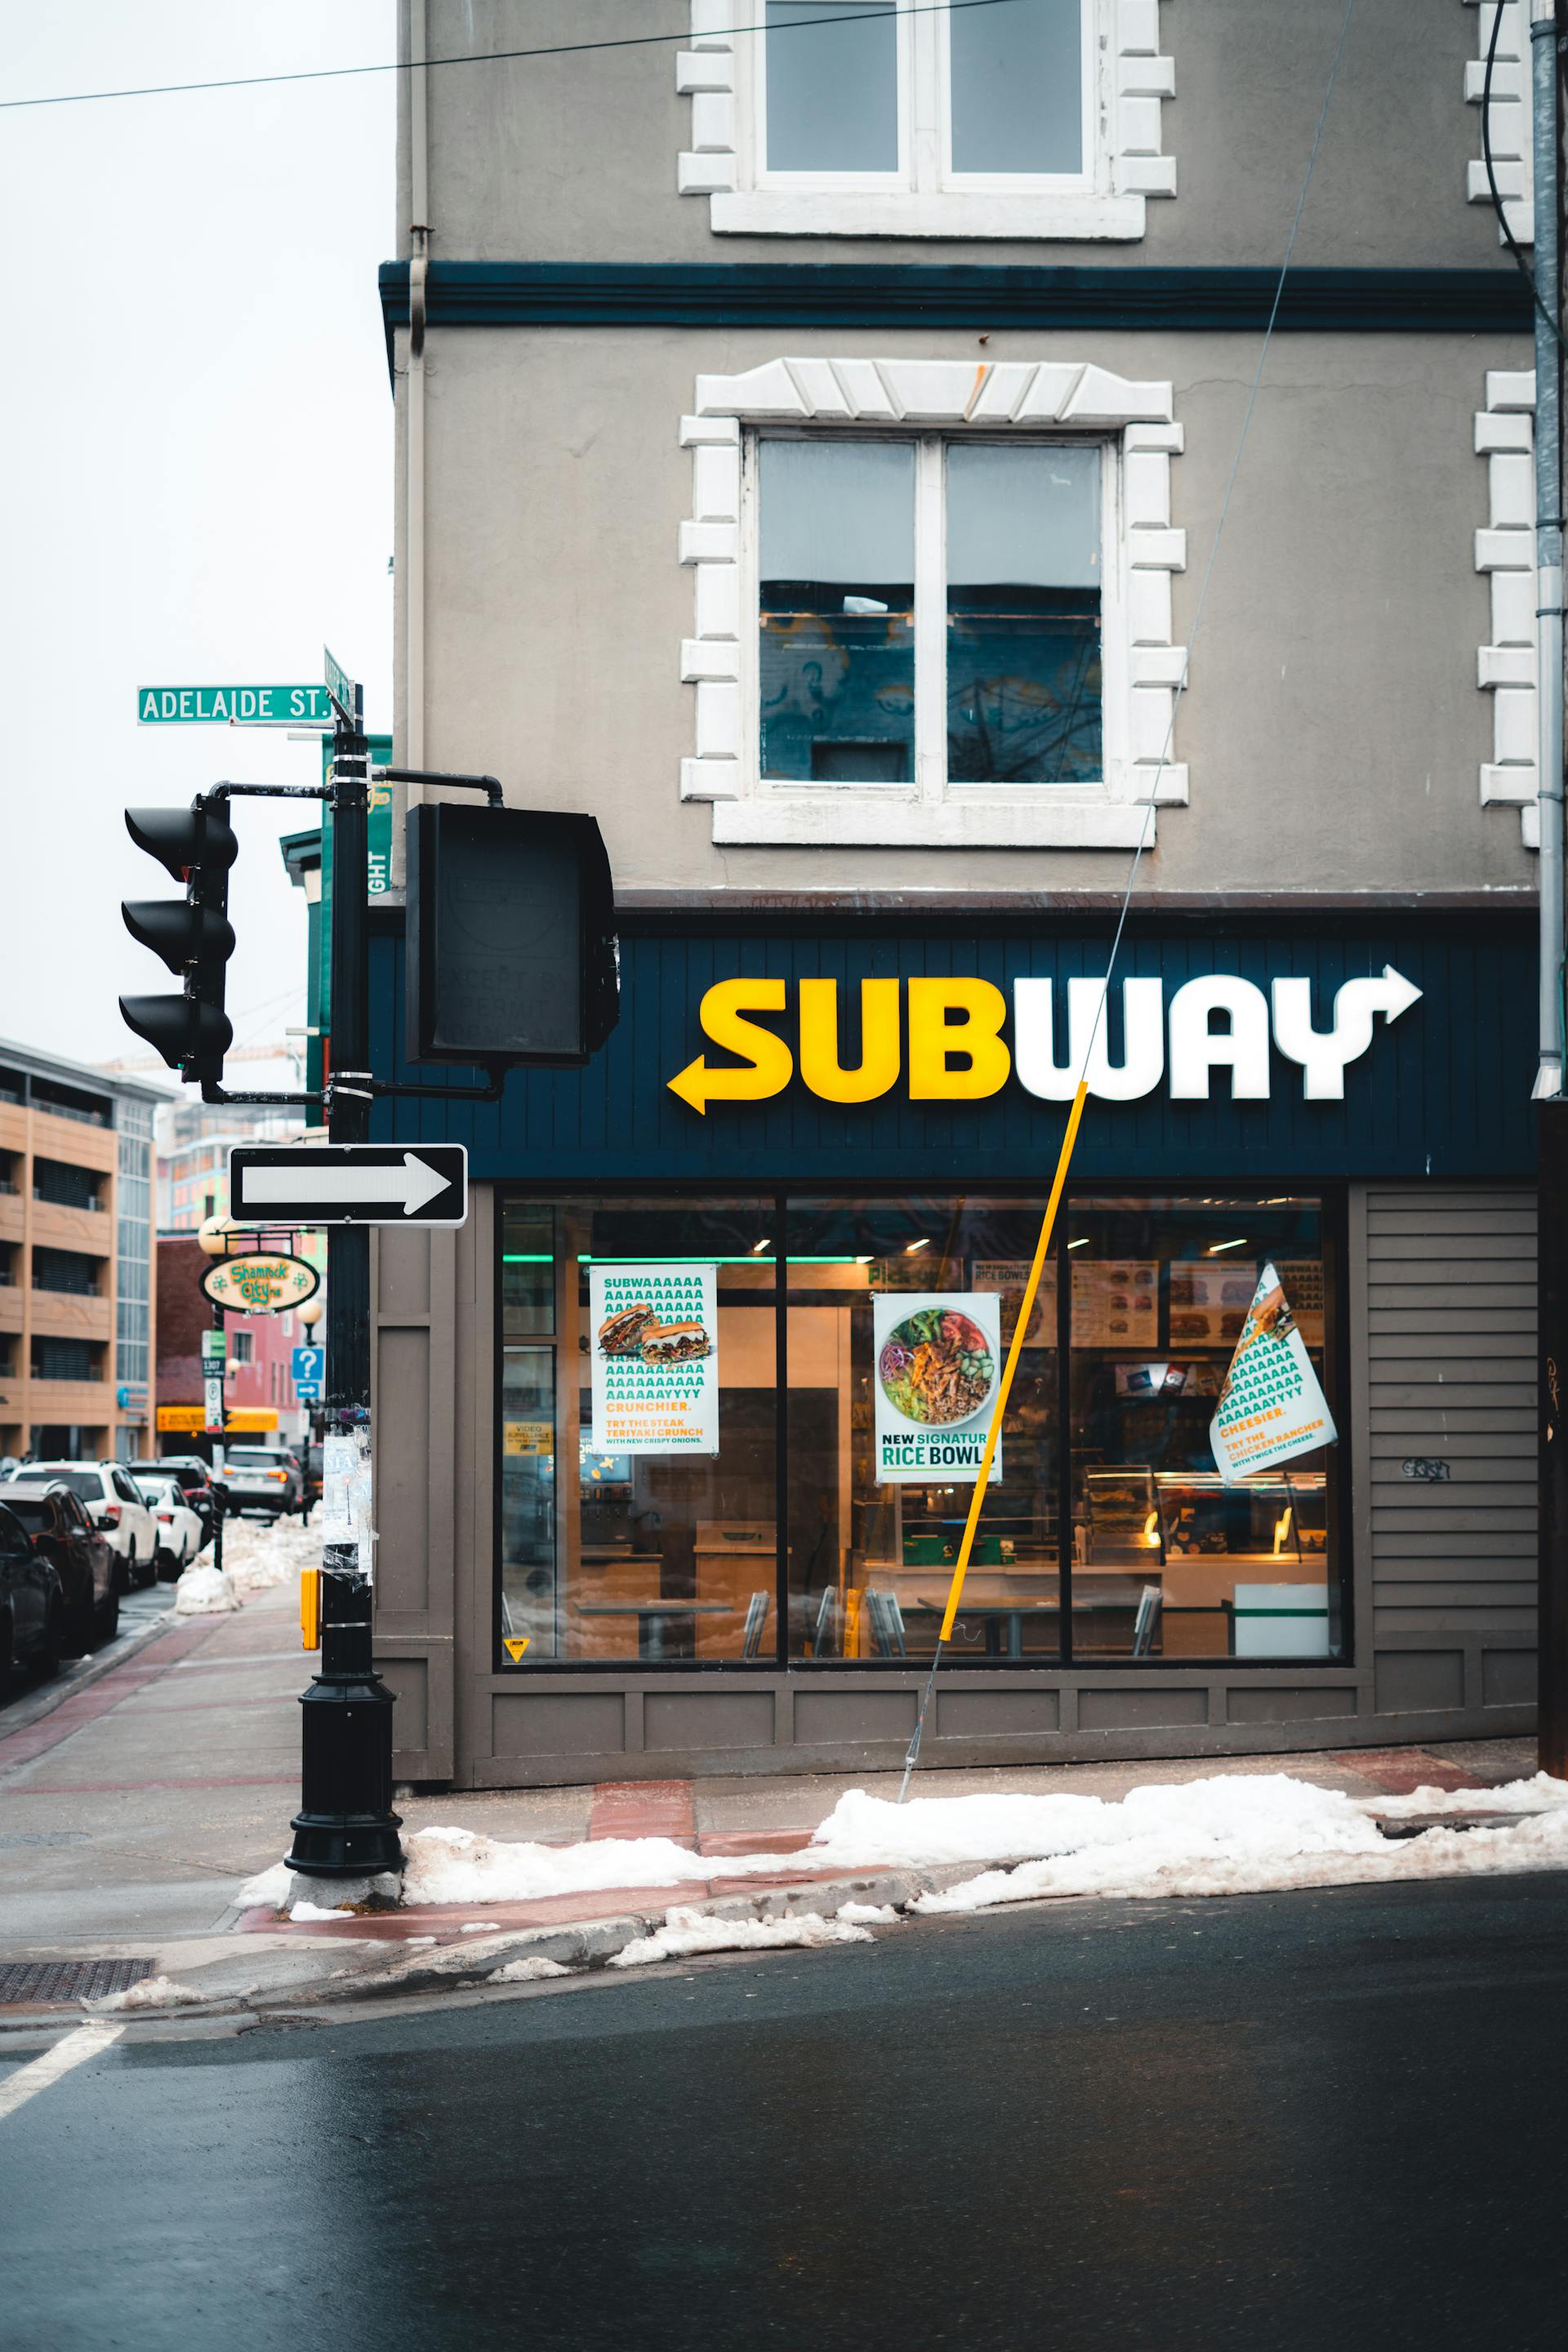 A Subway restaurant | Source: Pexels